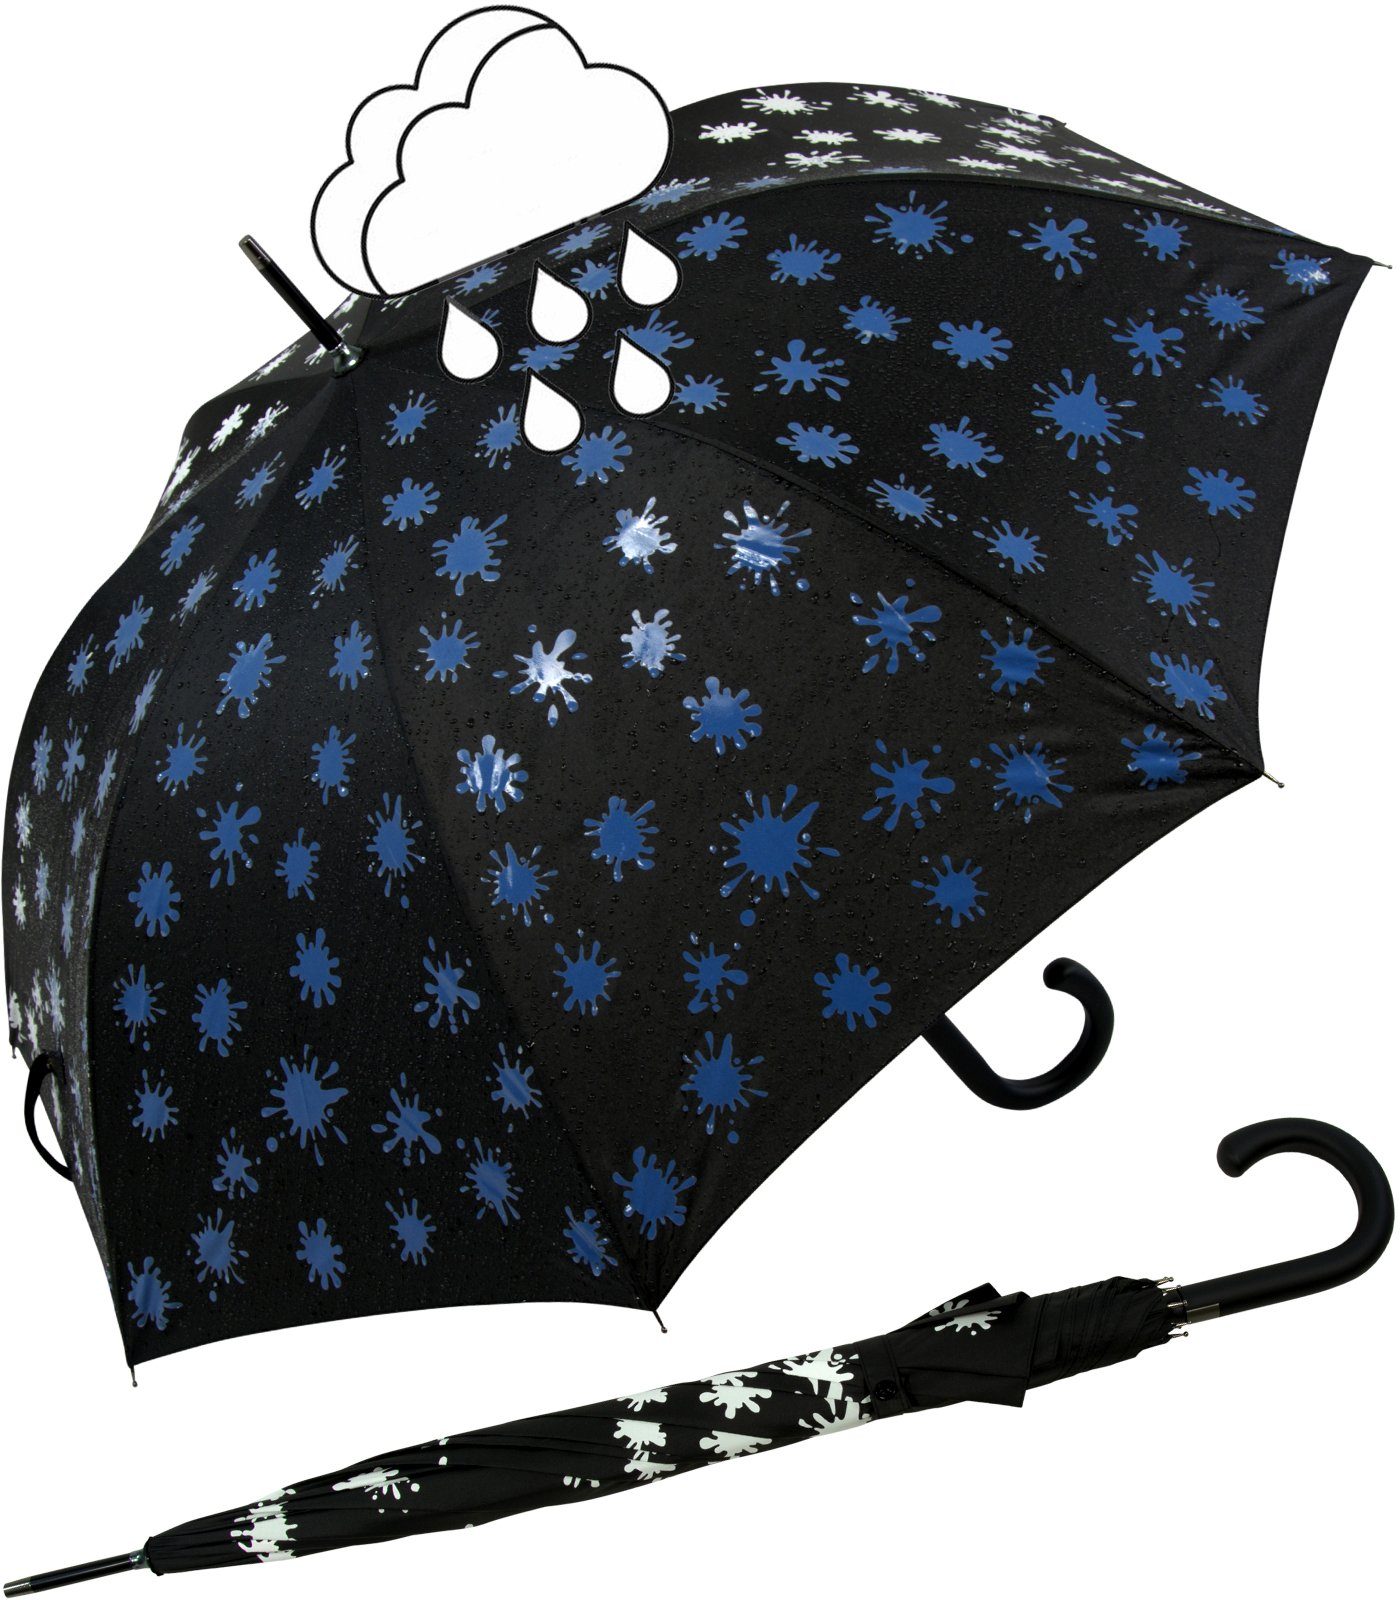 iX-brella blau Farbkleckse schwarz-weiß-blau bei Langregenschirm und Print, Automatik Wet - Farbänderung mit Damenschirm Nässe iX-brella